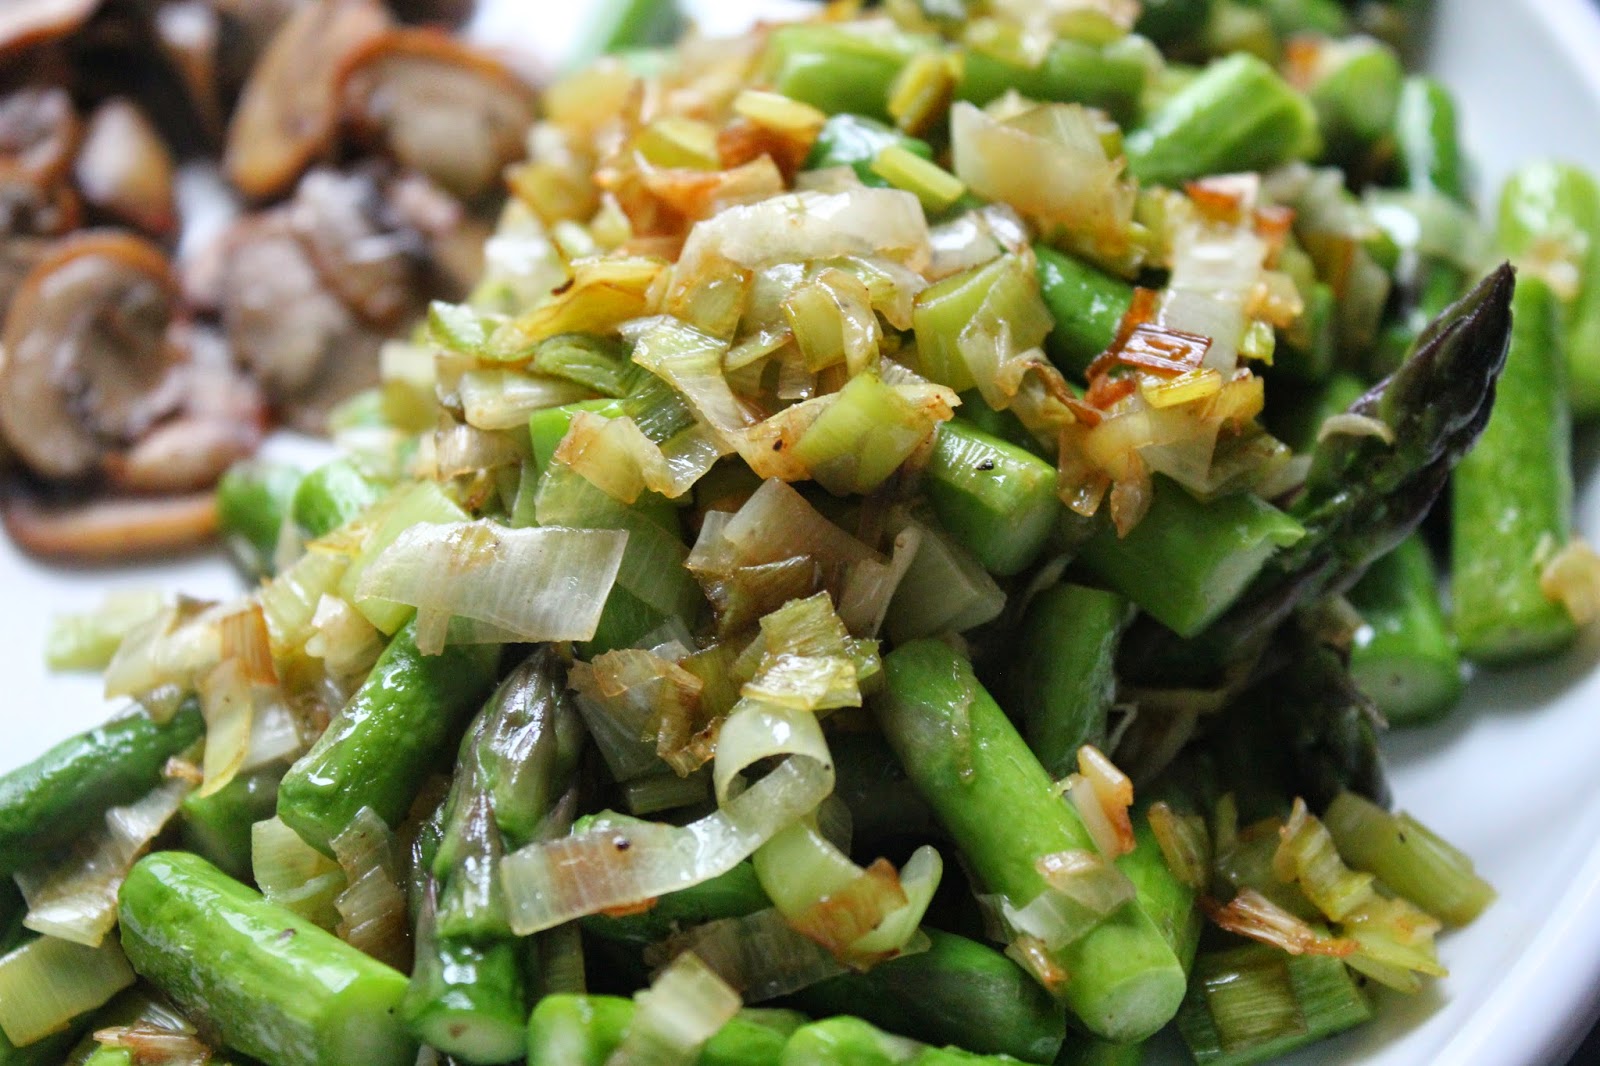 Sauteed leeks and asparagus